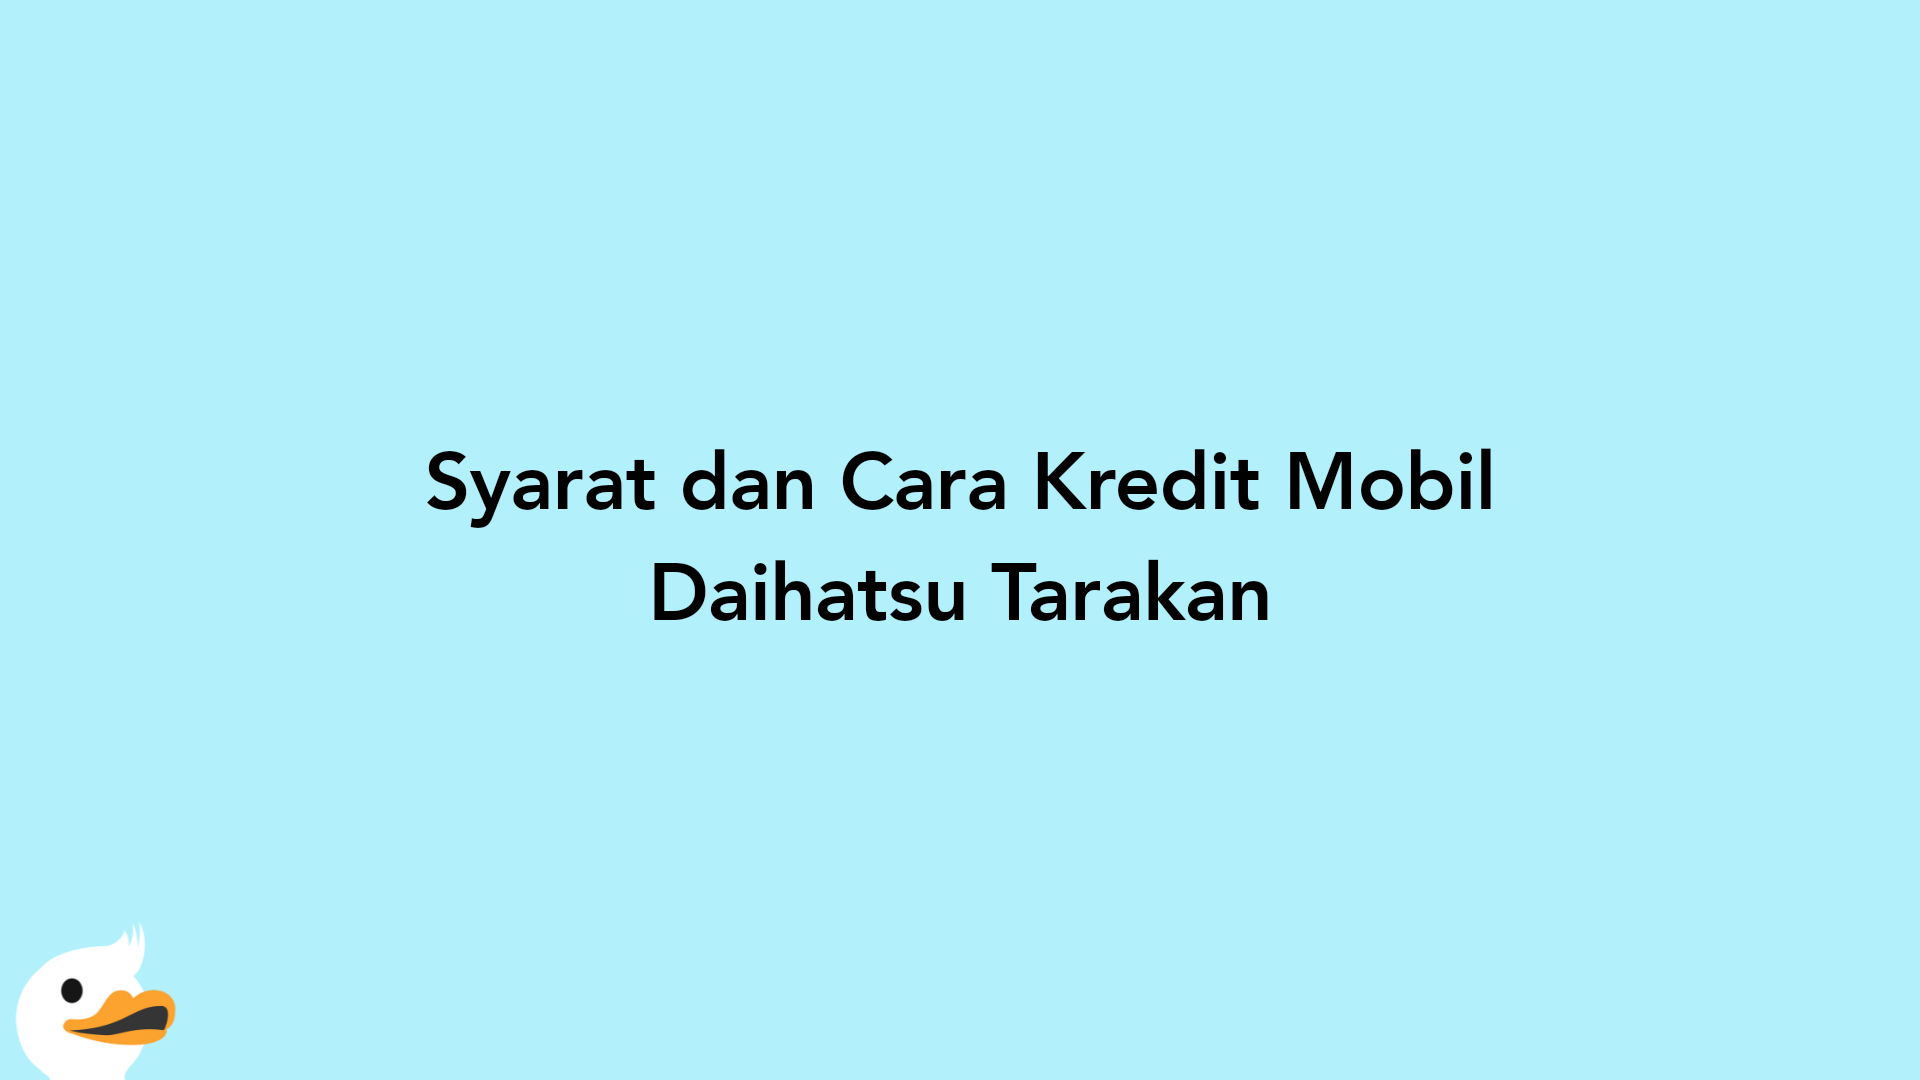 Syarat dan Cara Kredit Mobil Daihatsu Tarakan